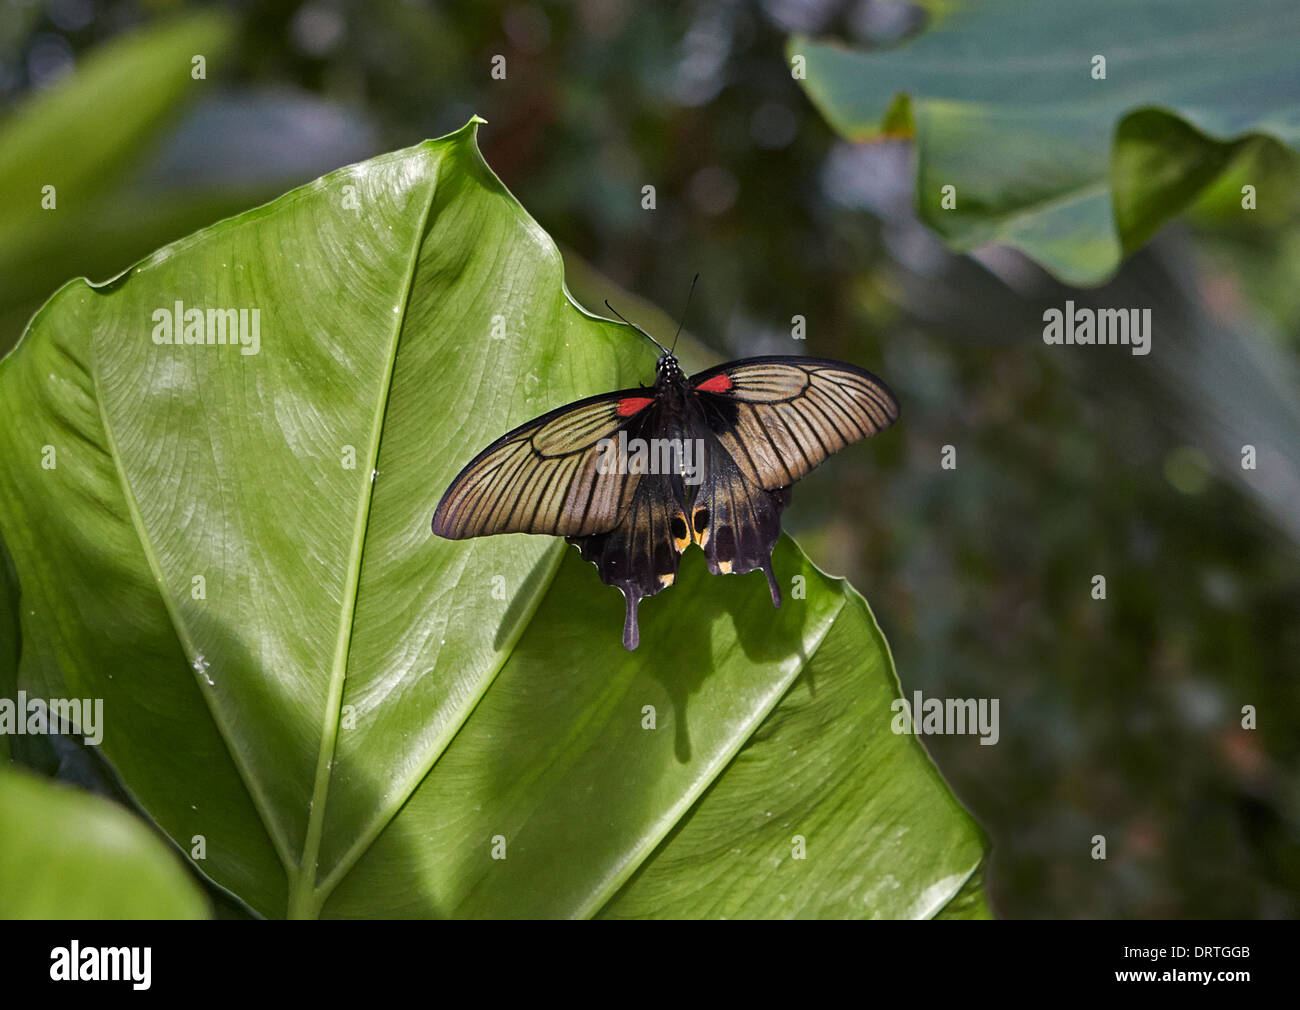 Especie asiática o Gran mariposa Papilio lowi Mormón amarillo de la familia Papilionidae o dorsal vista abierta Foto de stock